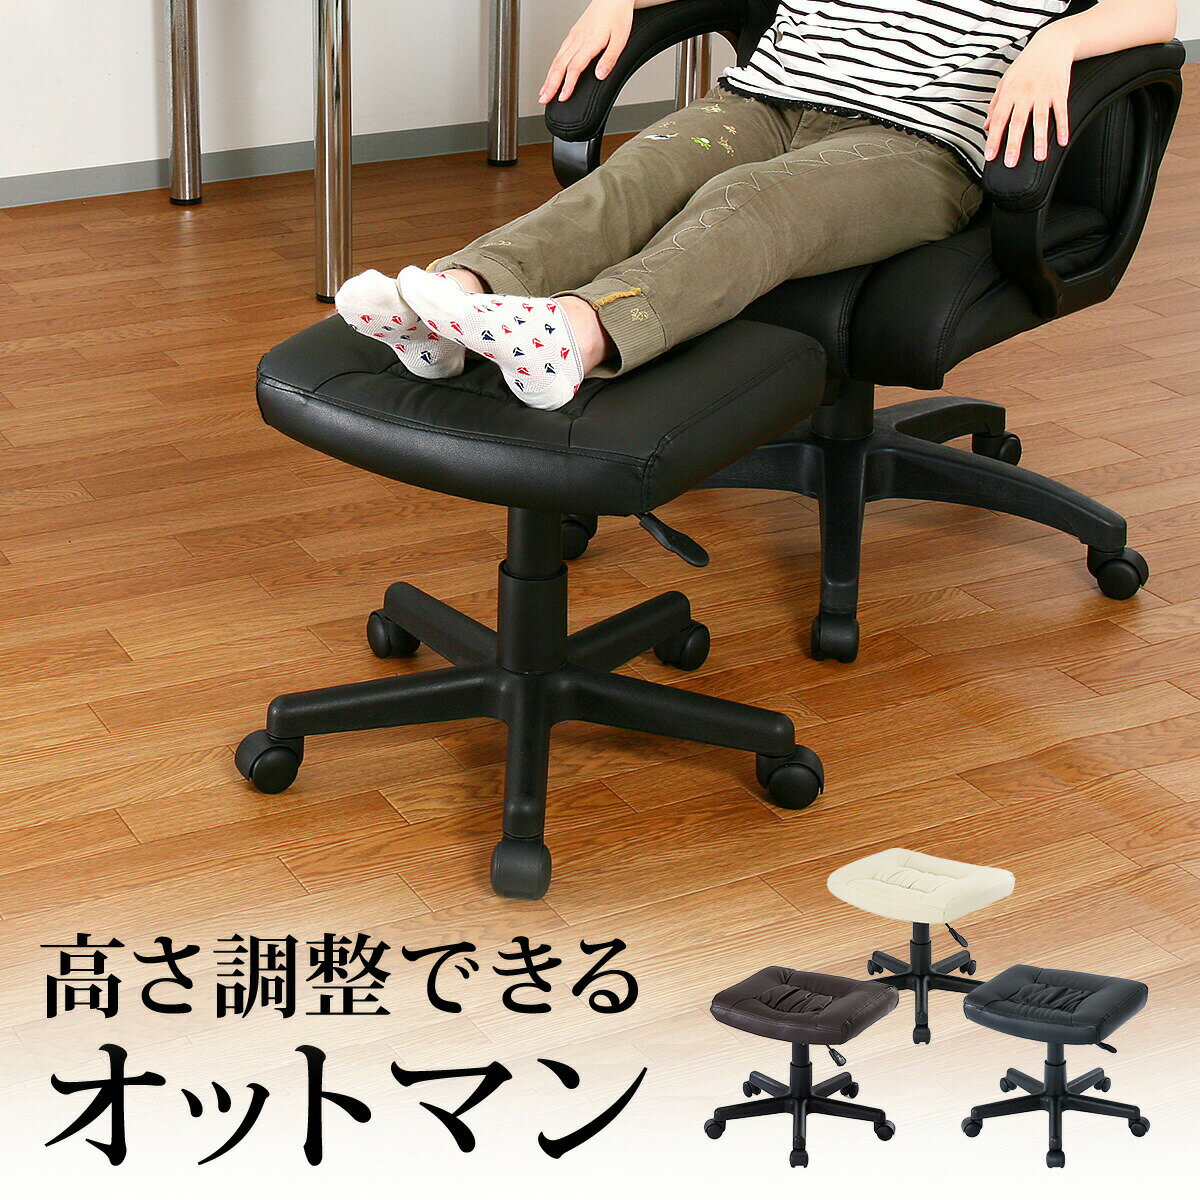 【送料無料】 オットマン 足置き レザー キャスター付 プレジデントチェアに最適 オフィスチェア 椅...:sanwadirect:10053409